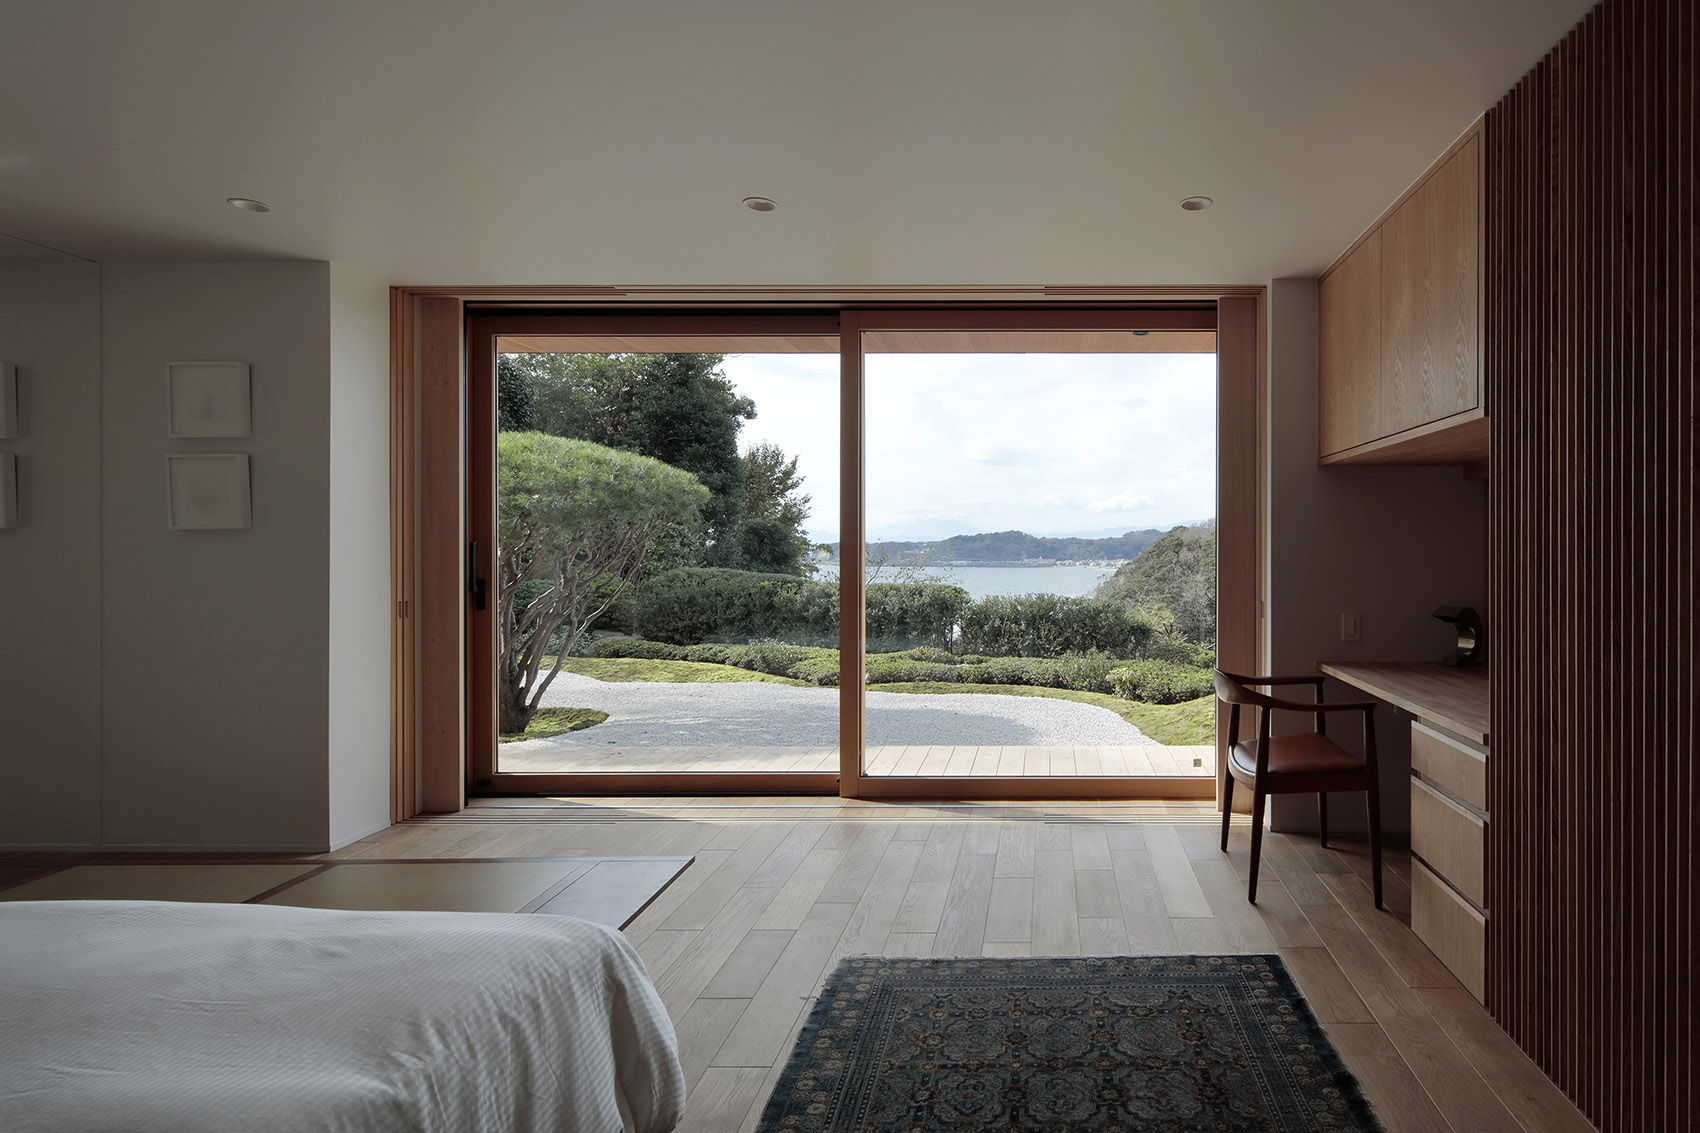 T3住宅，体验抚慰人心的日式美学 | CUBO-30